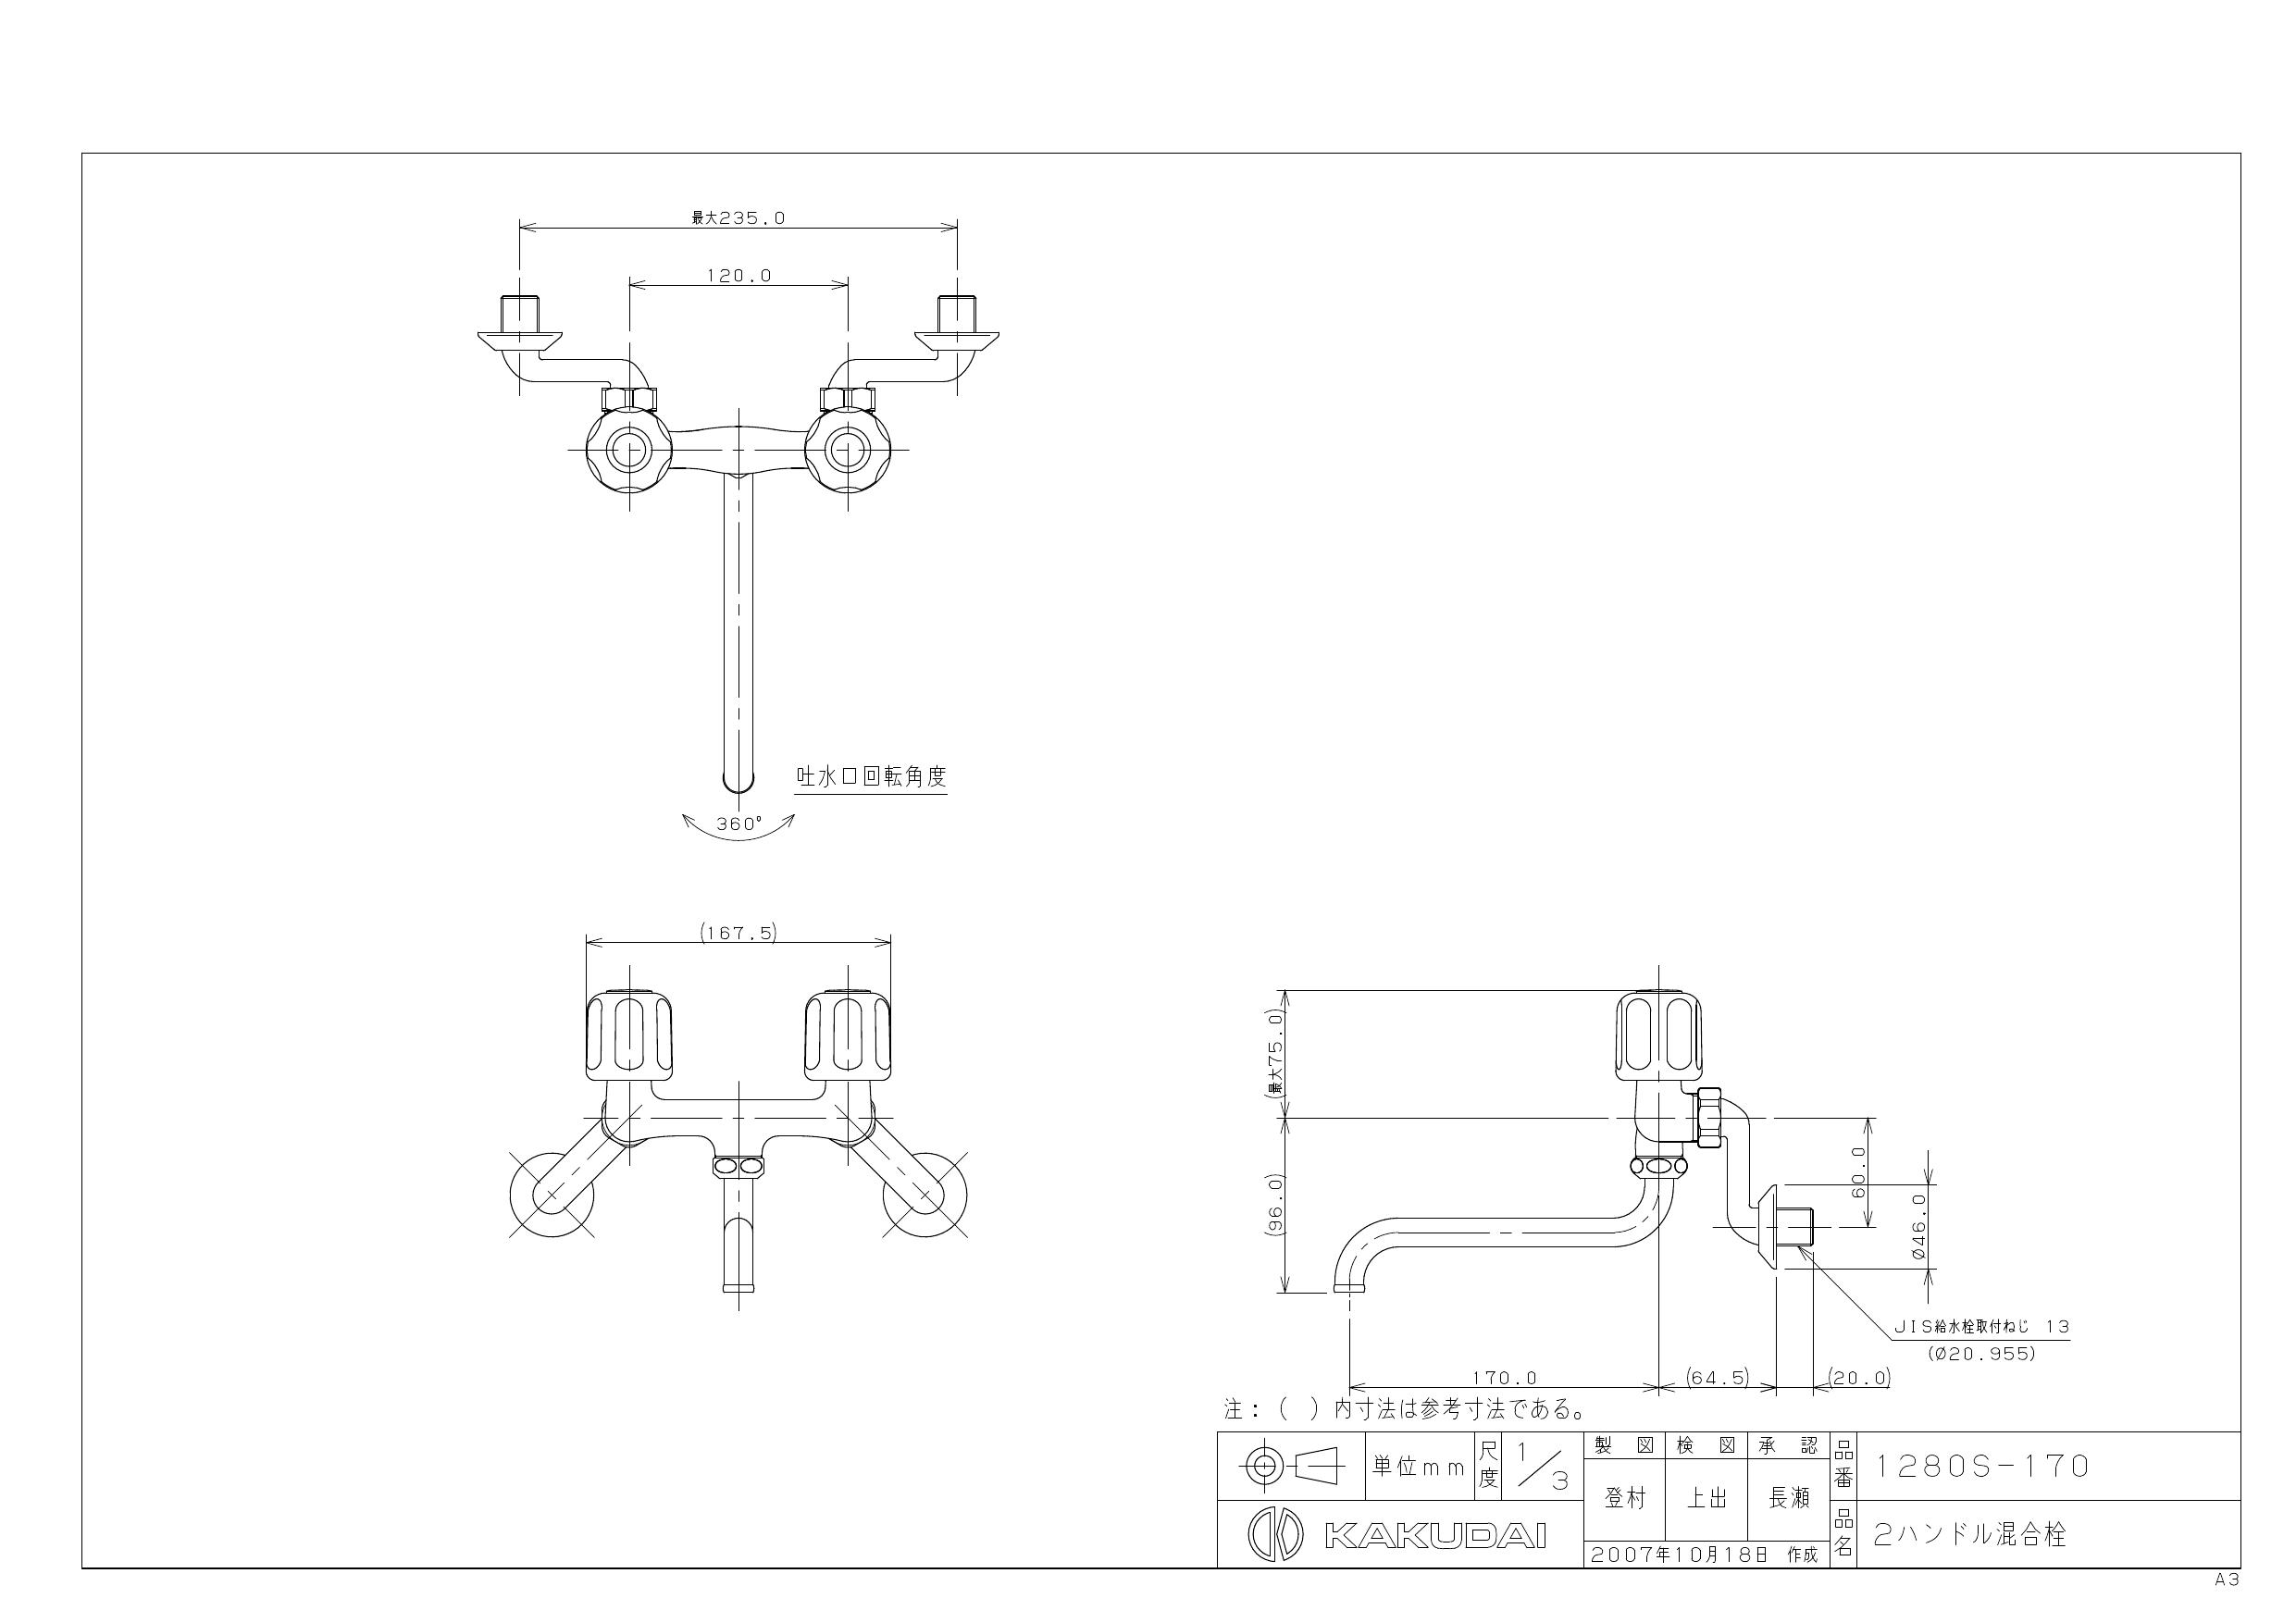 カクダイ 1280S-170取扱説明書 商品図面 | 通販 プロストア ダイレクト